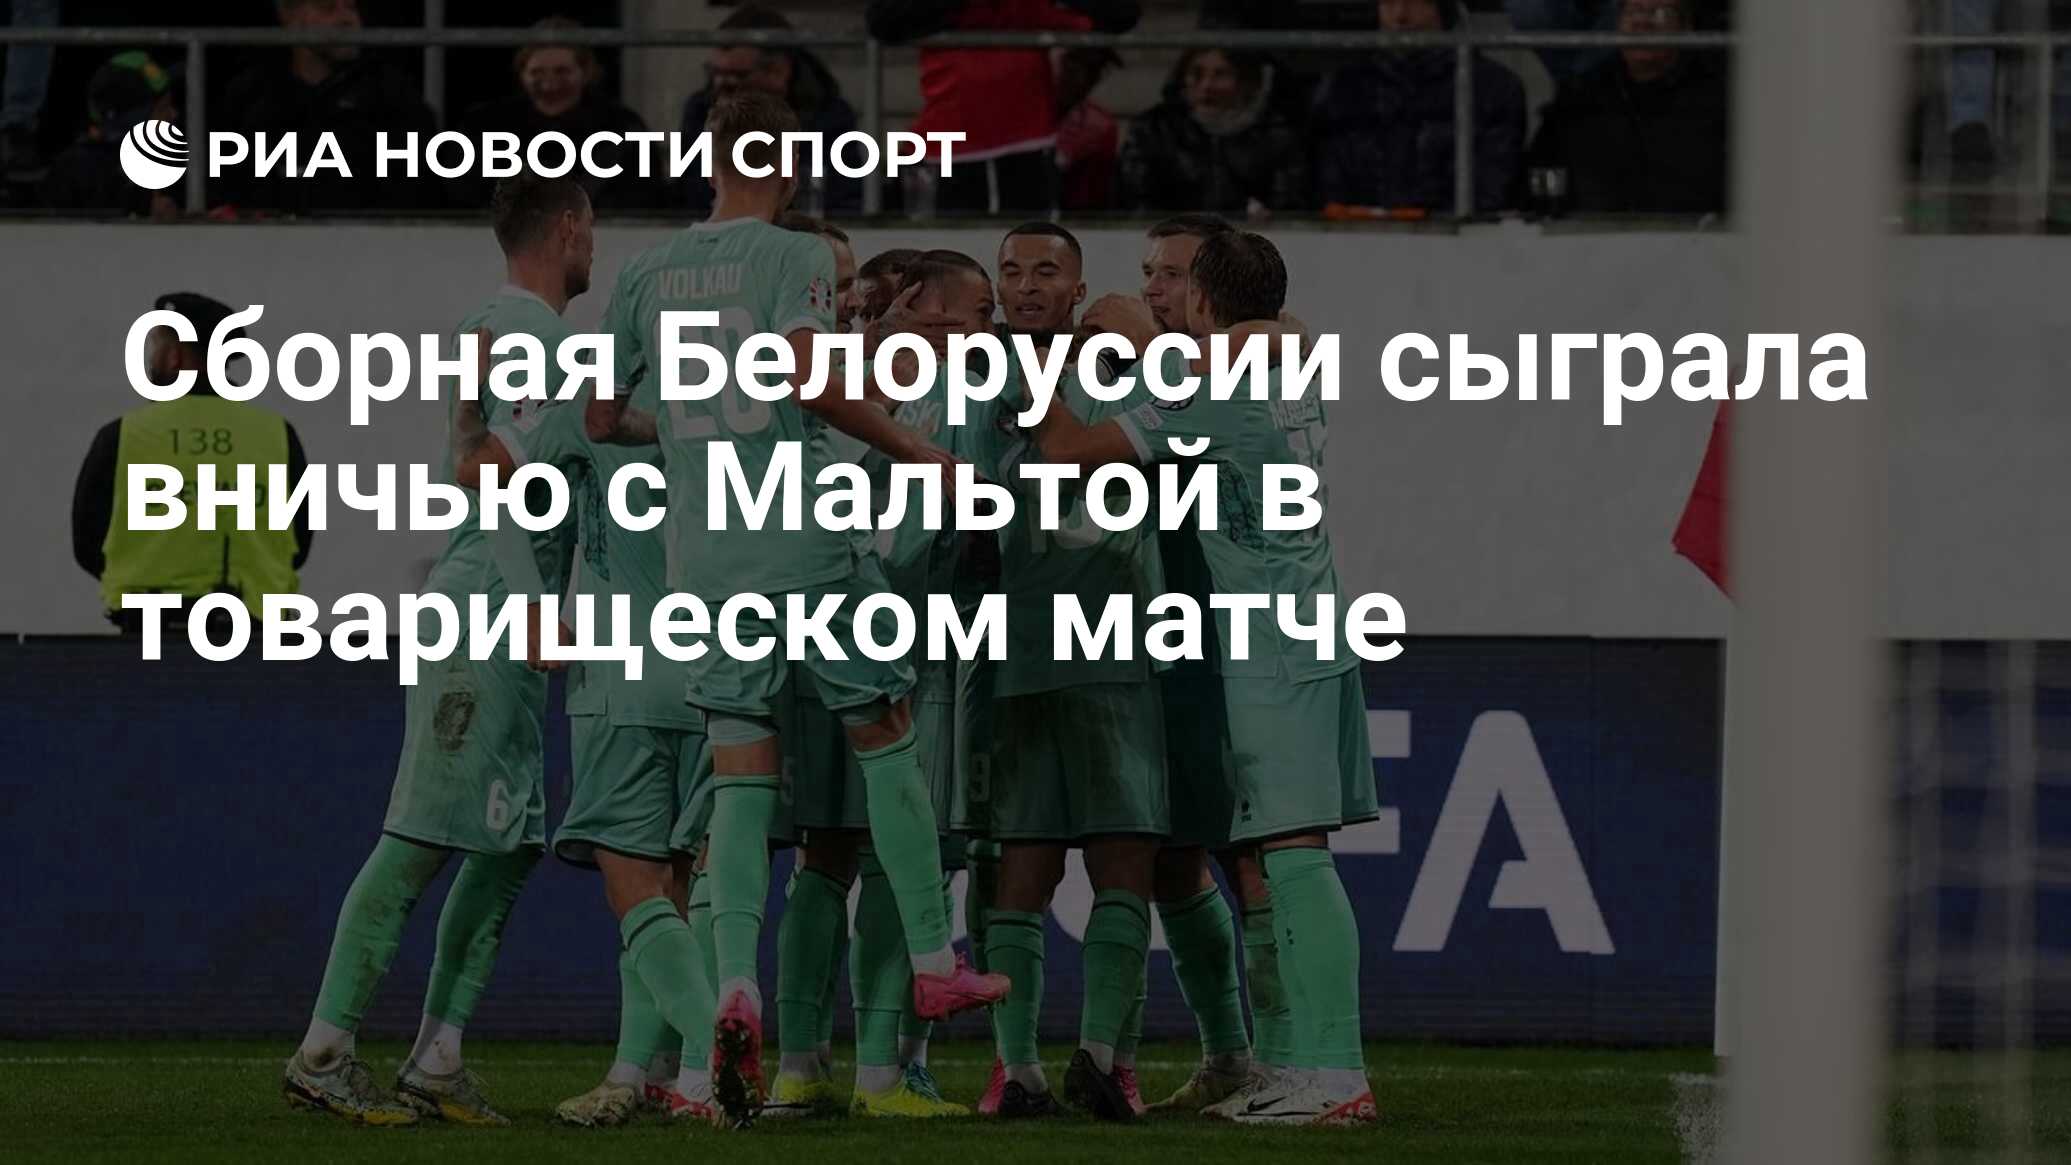 Сборная Белоруссии сыграла вничью с Мальтой в товарищеском матче